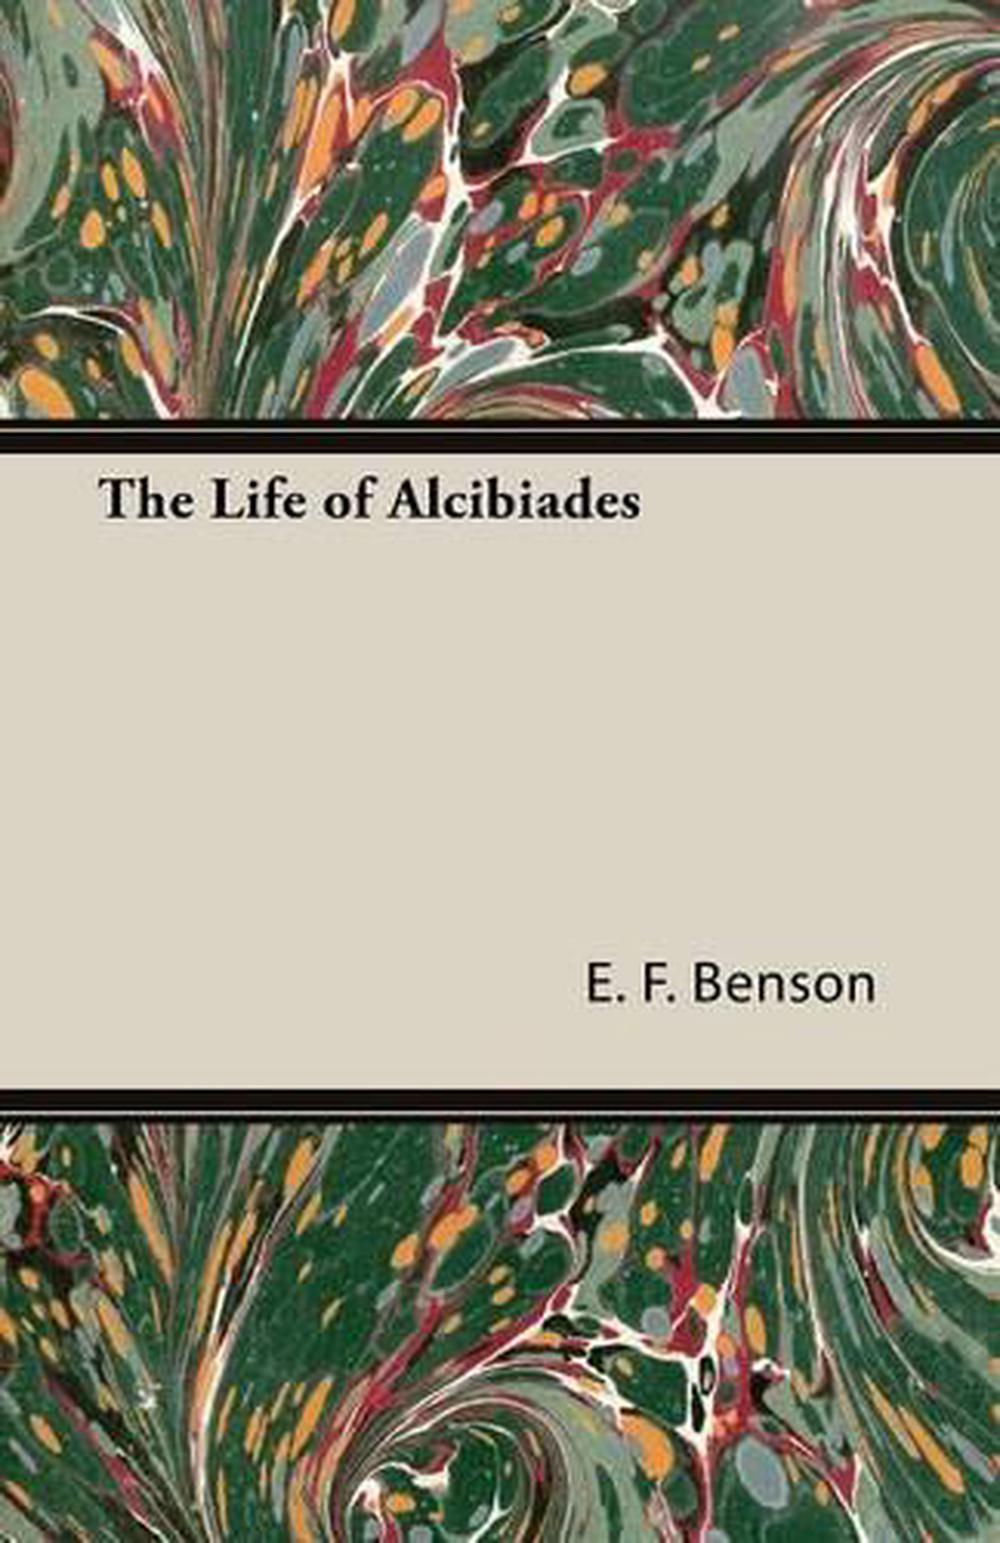 The Life of Alcibiades by E.F. Benson